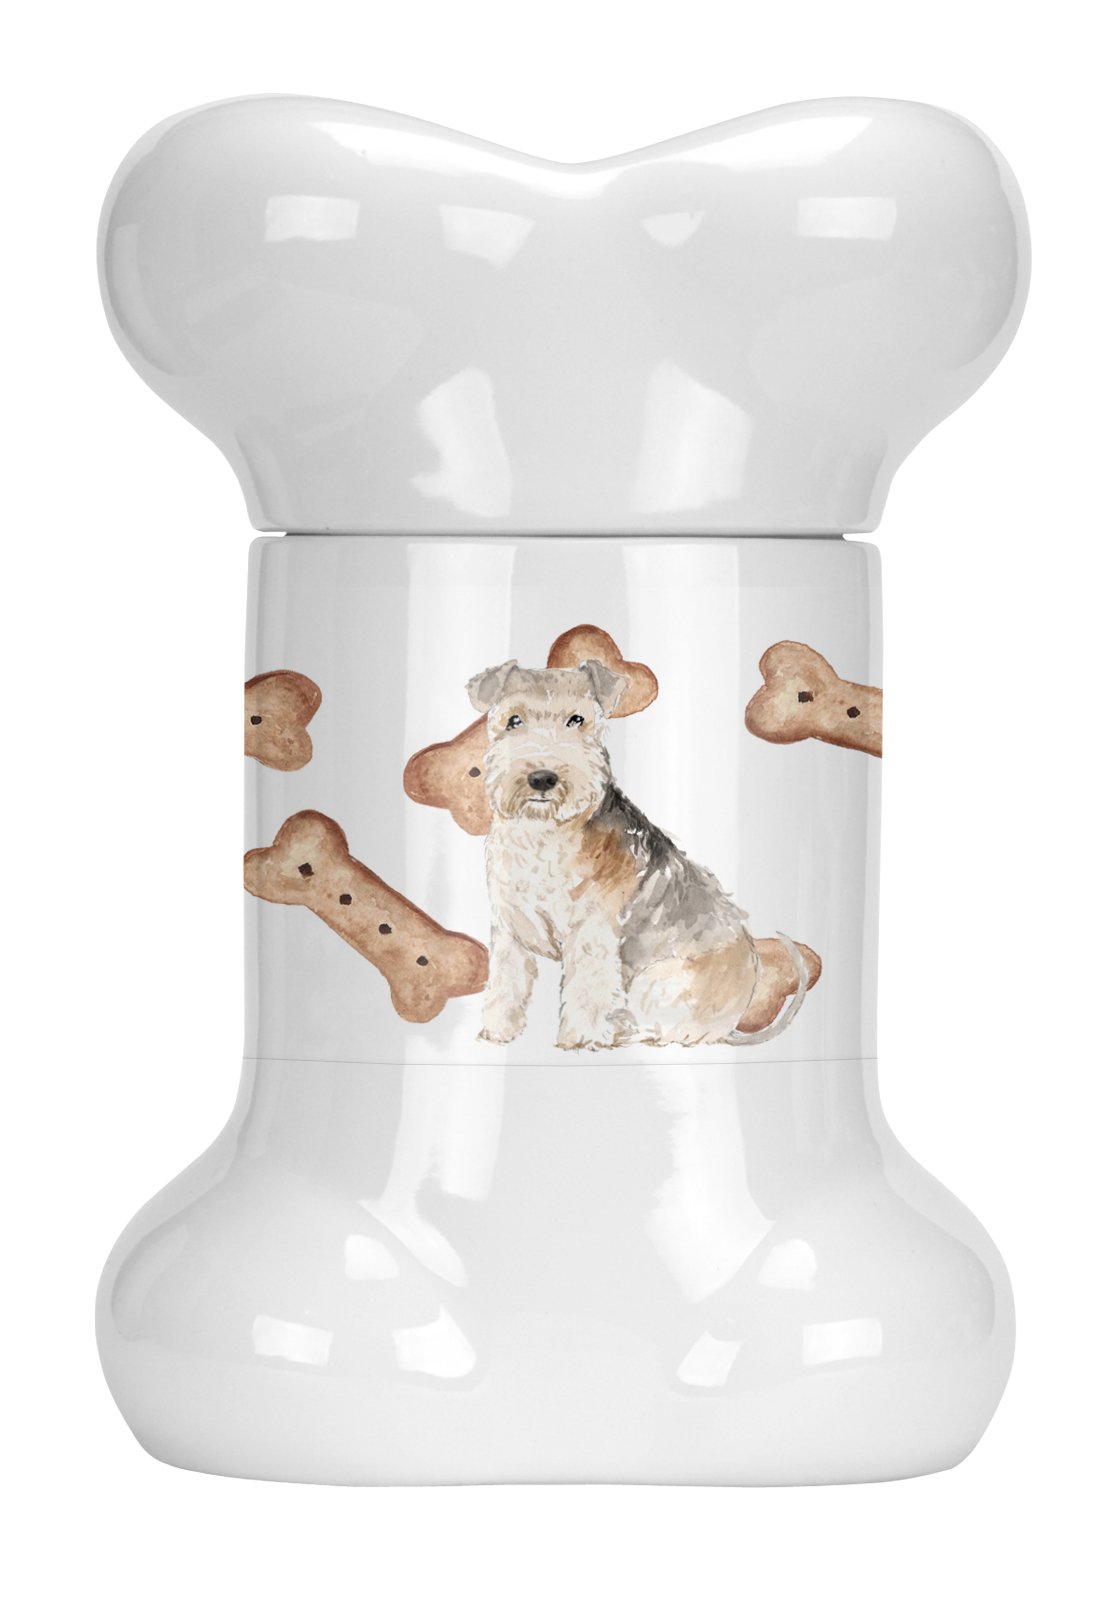 Lakeland Terrier Bone Shaped Treat Jar CK2321BSTJ by Caroline's Treasures